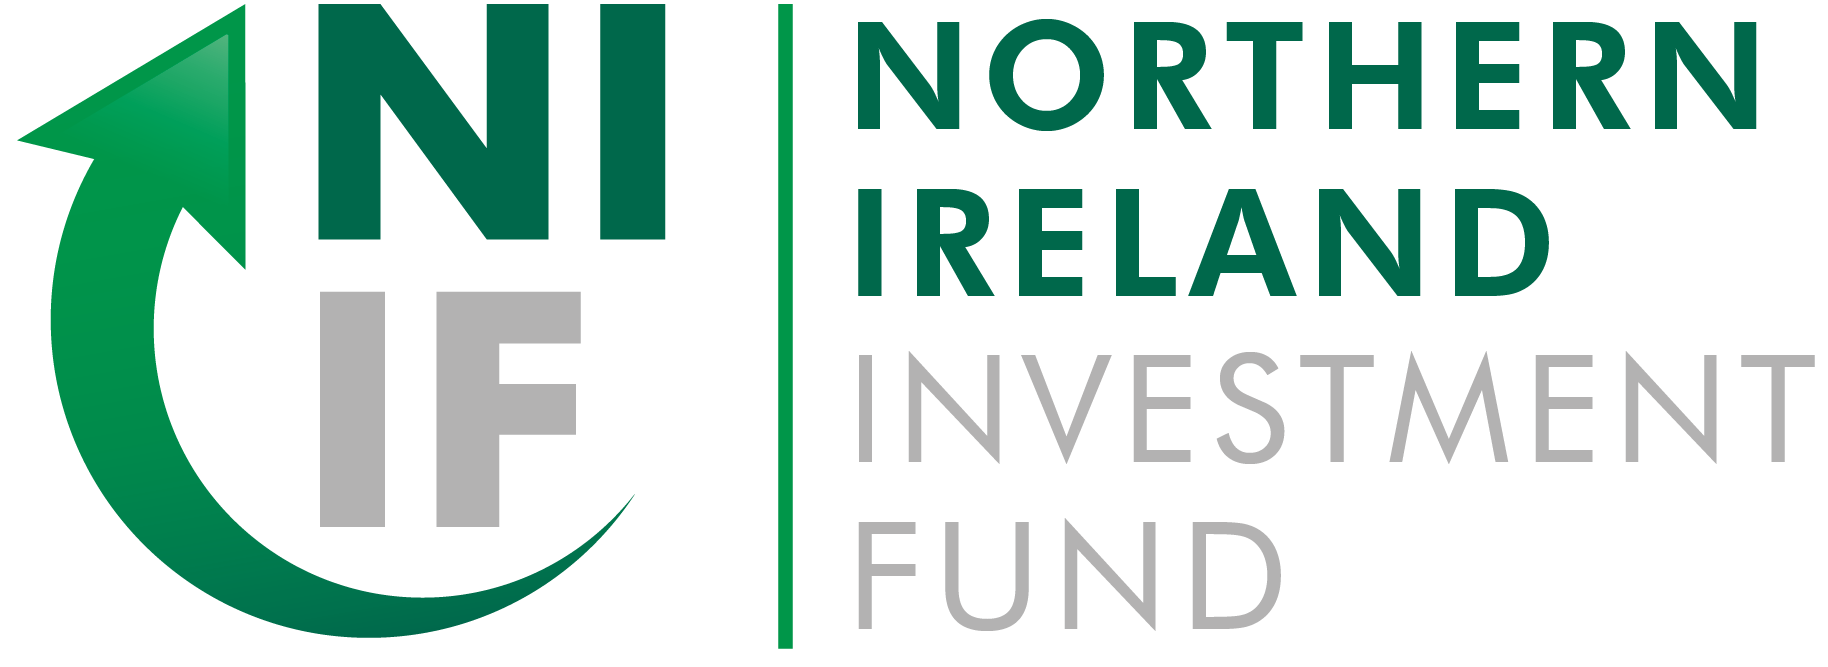 Northern Ireland Investment Fund